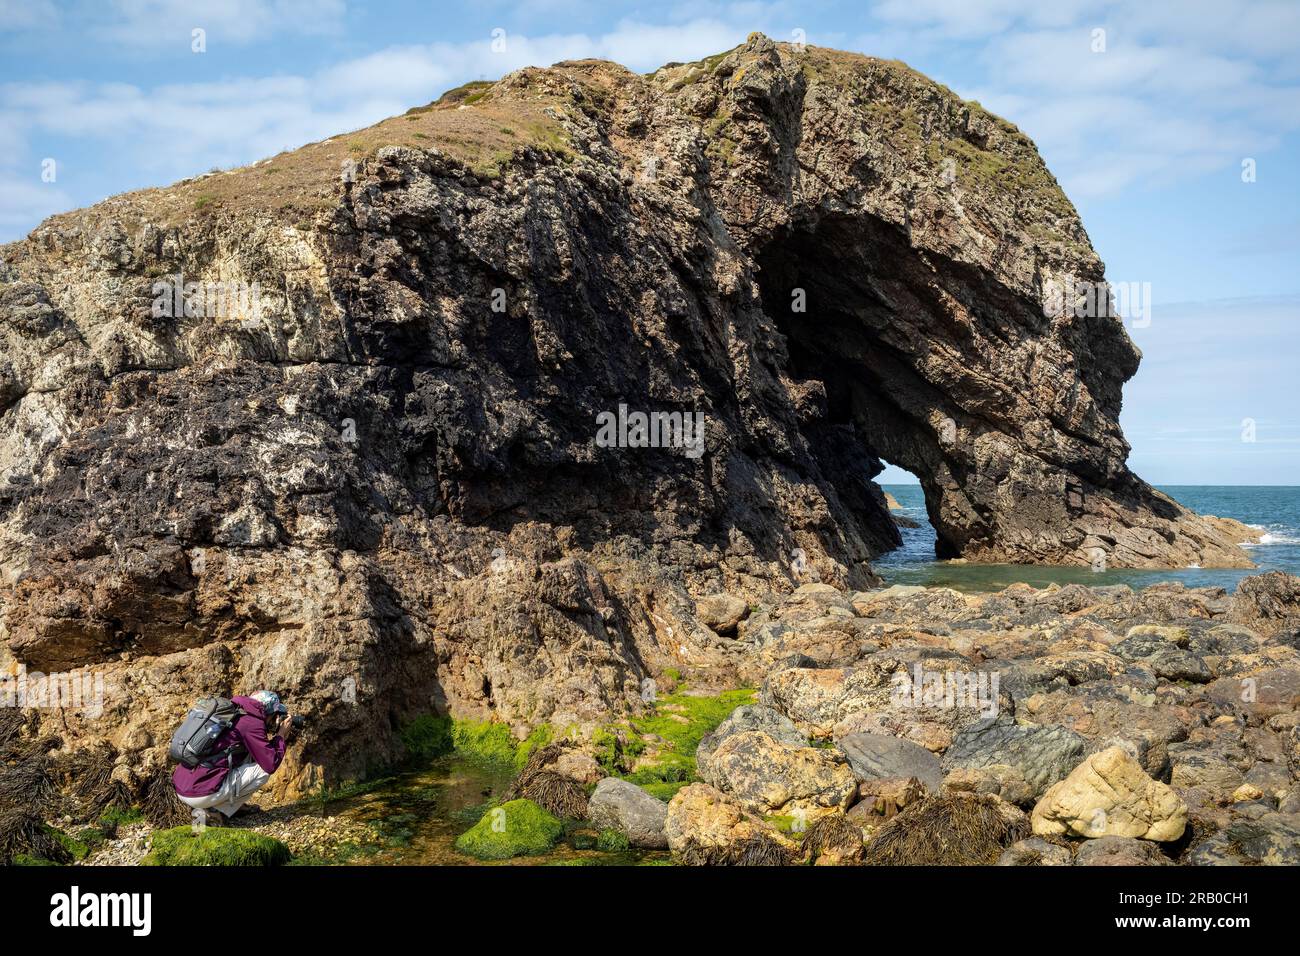 Ein Wanderer, der einen Felsenpool unter der Gezeiteninsel Ynys y Fydlyn, NW Anglesey, Wales, Großbritannien, fotografiert Stockfoto